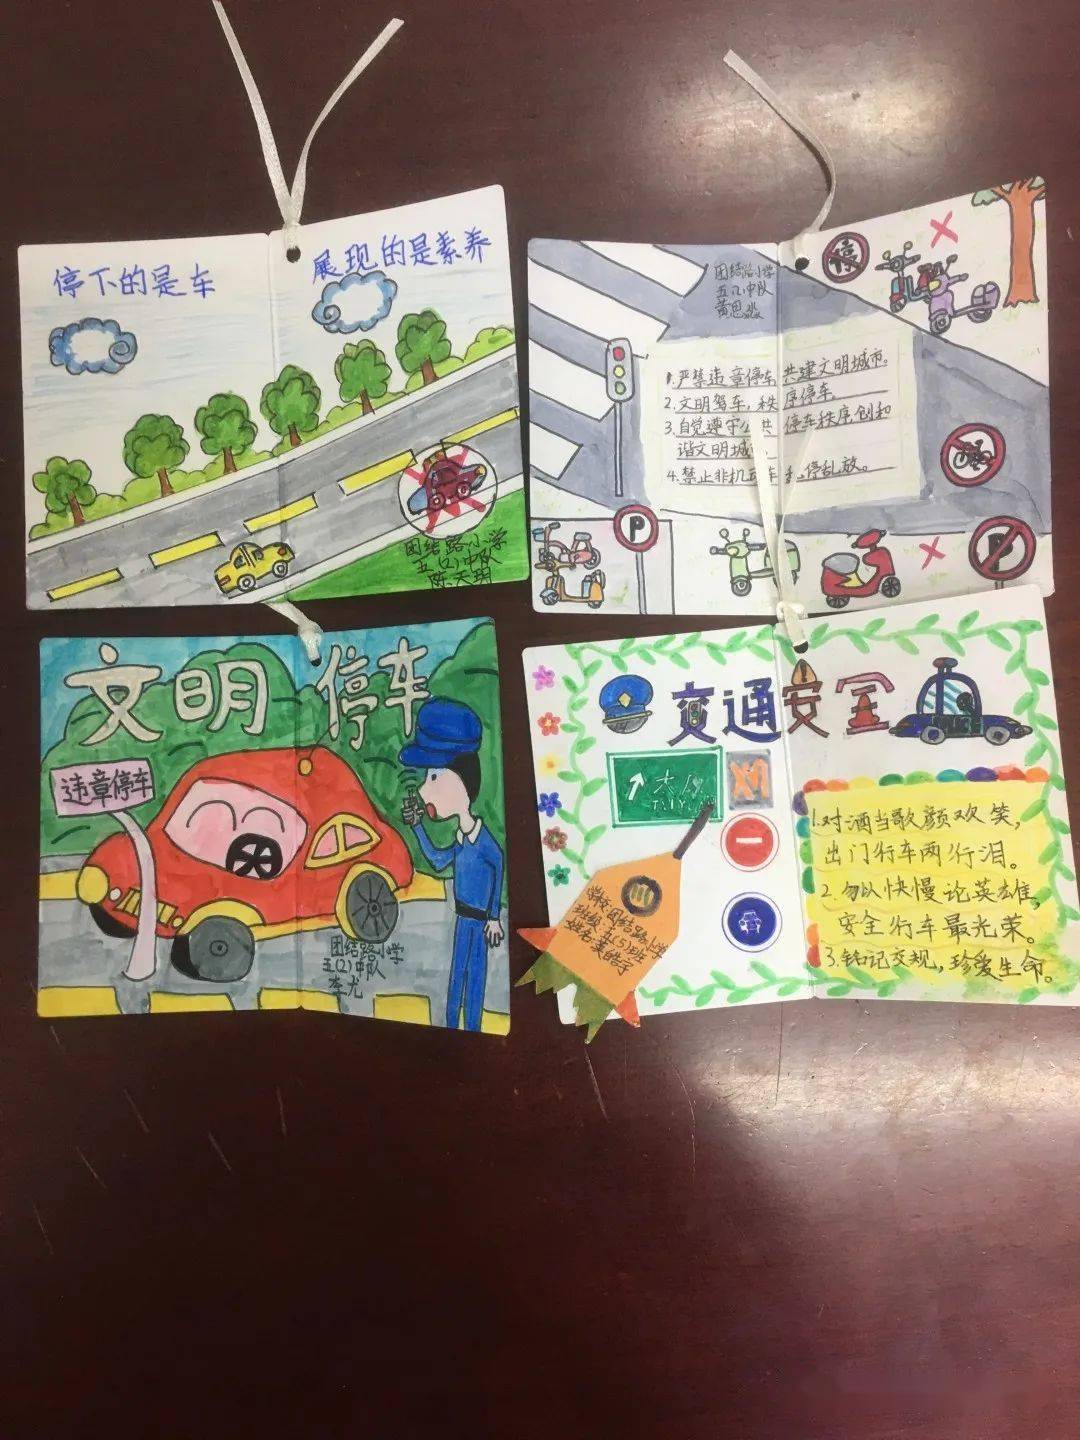 部分学生志愿者在学校附近向市民发放文明交通手绘小卡片